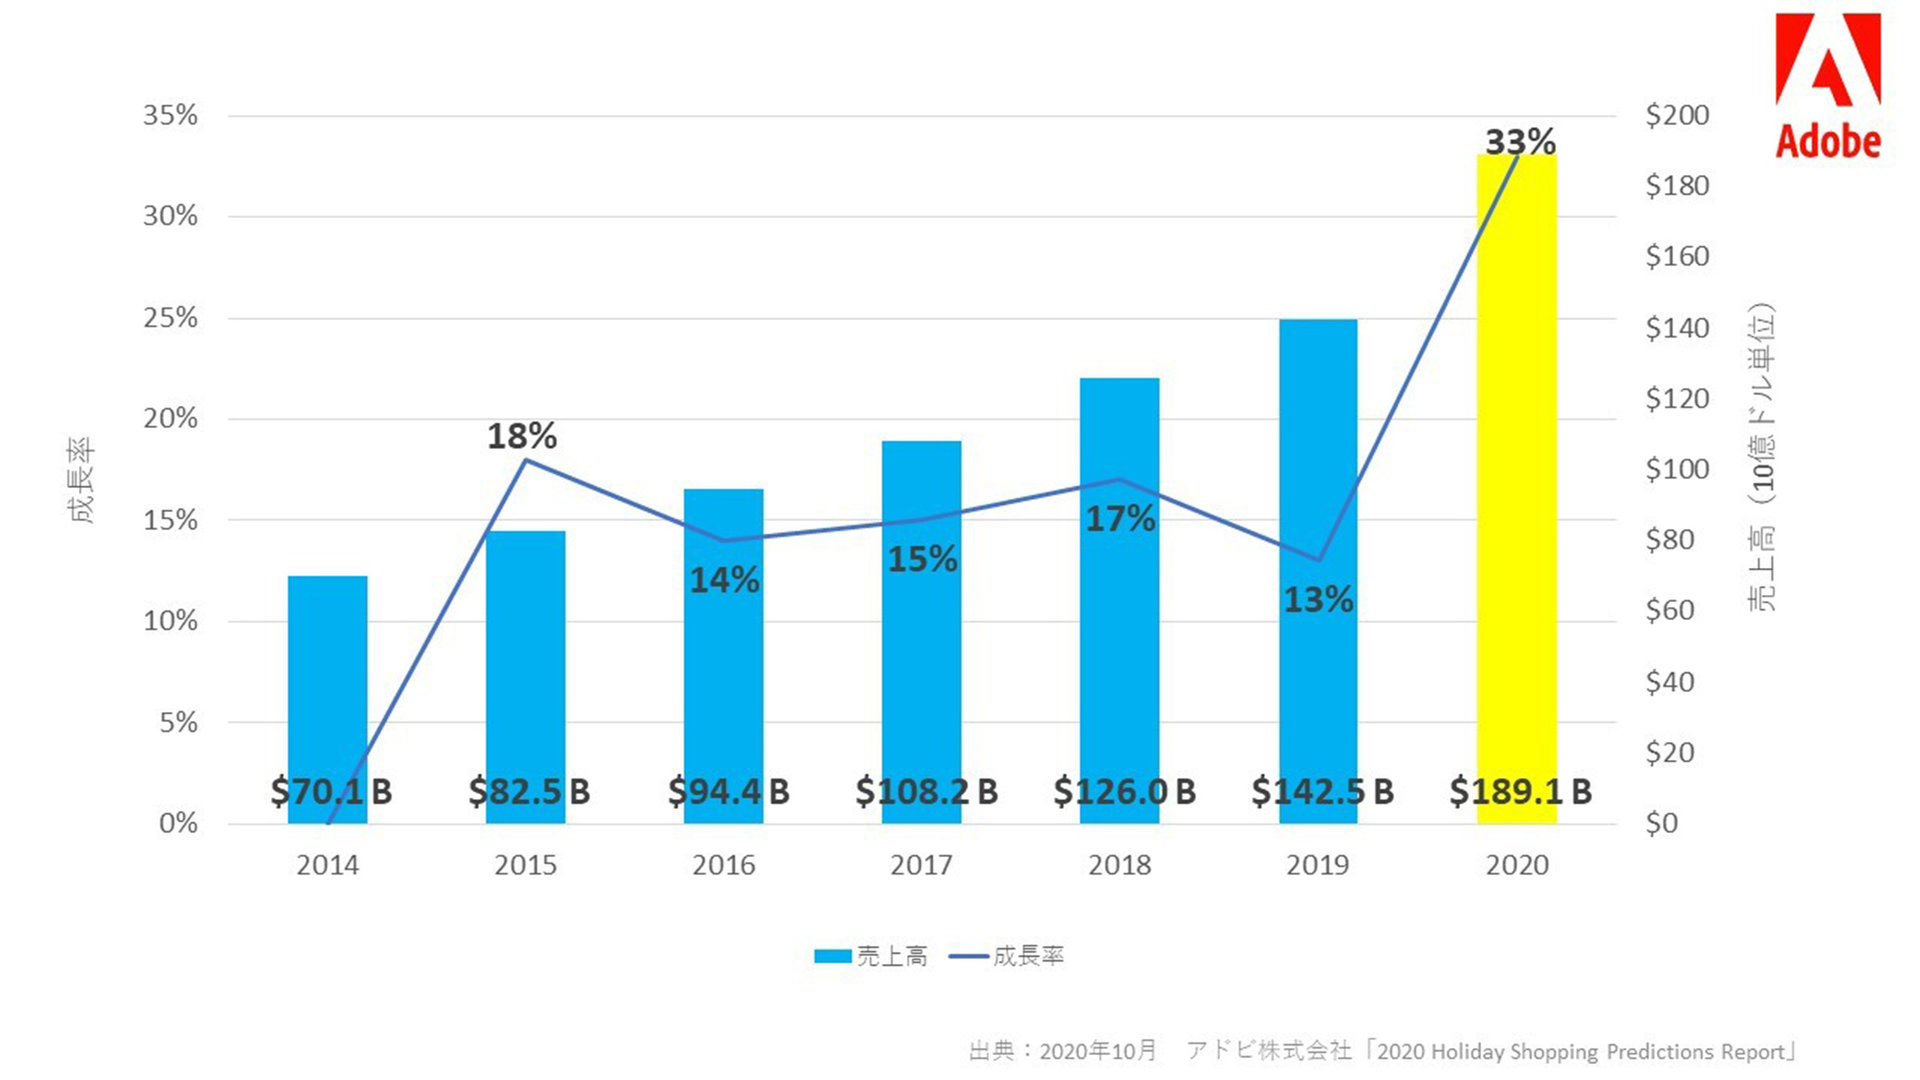 2020年米国ホリデーシーズンショッピング、オンライン売上高が過去最高に――Adobe予測